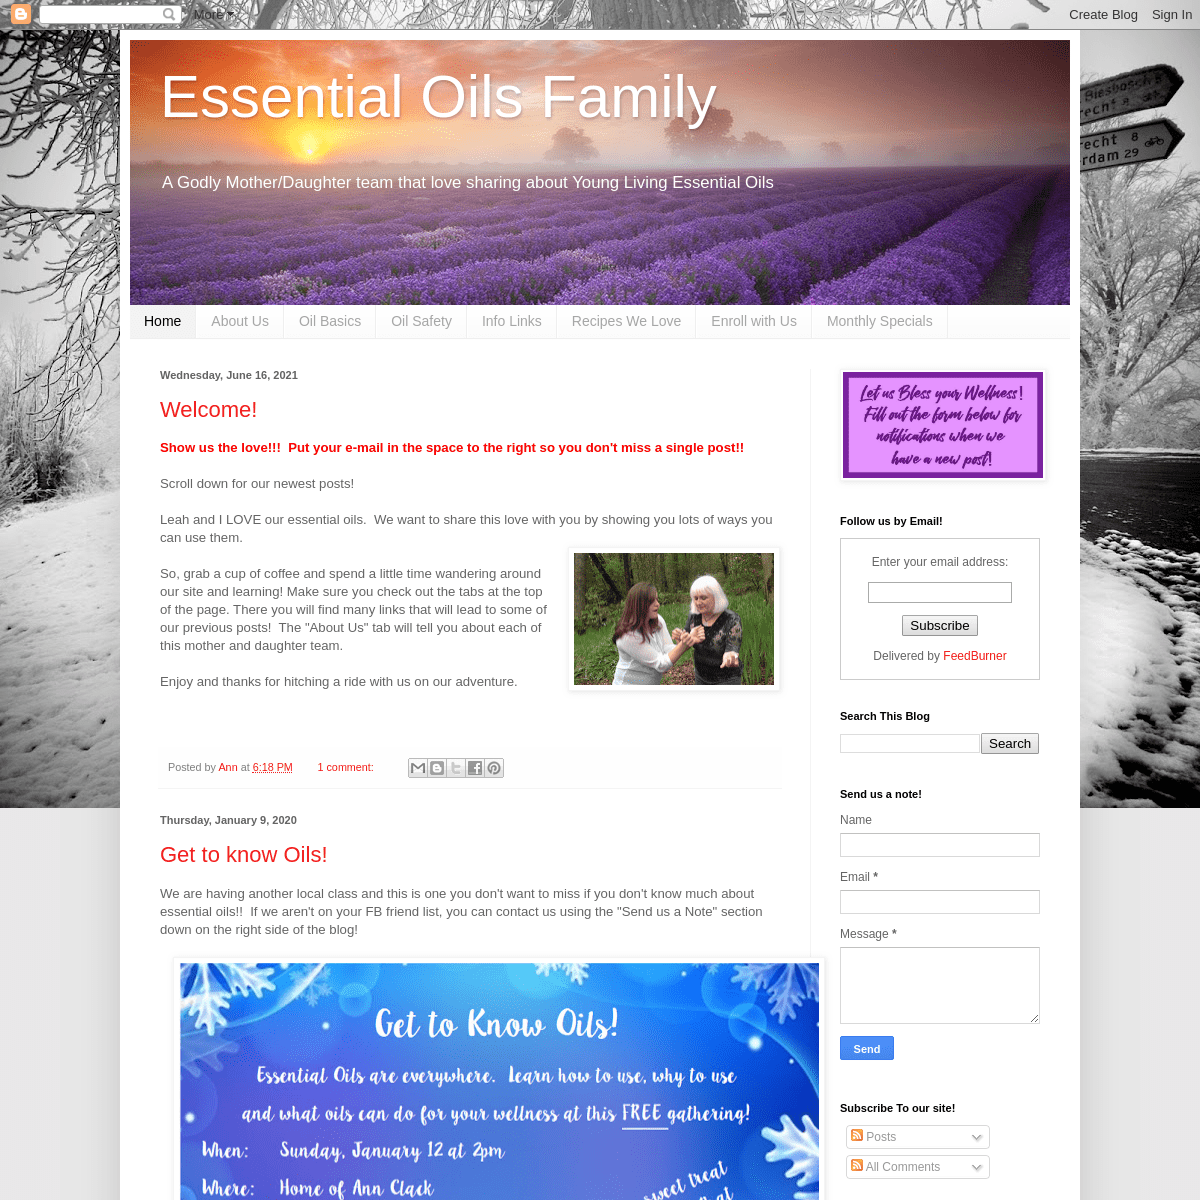 A complete backup of essentialoils-family.blogspot.com